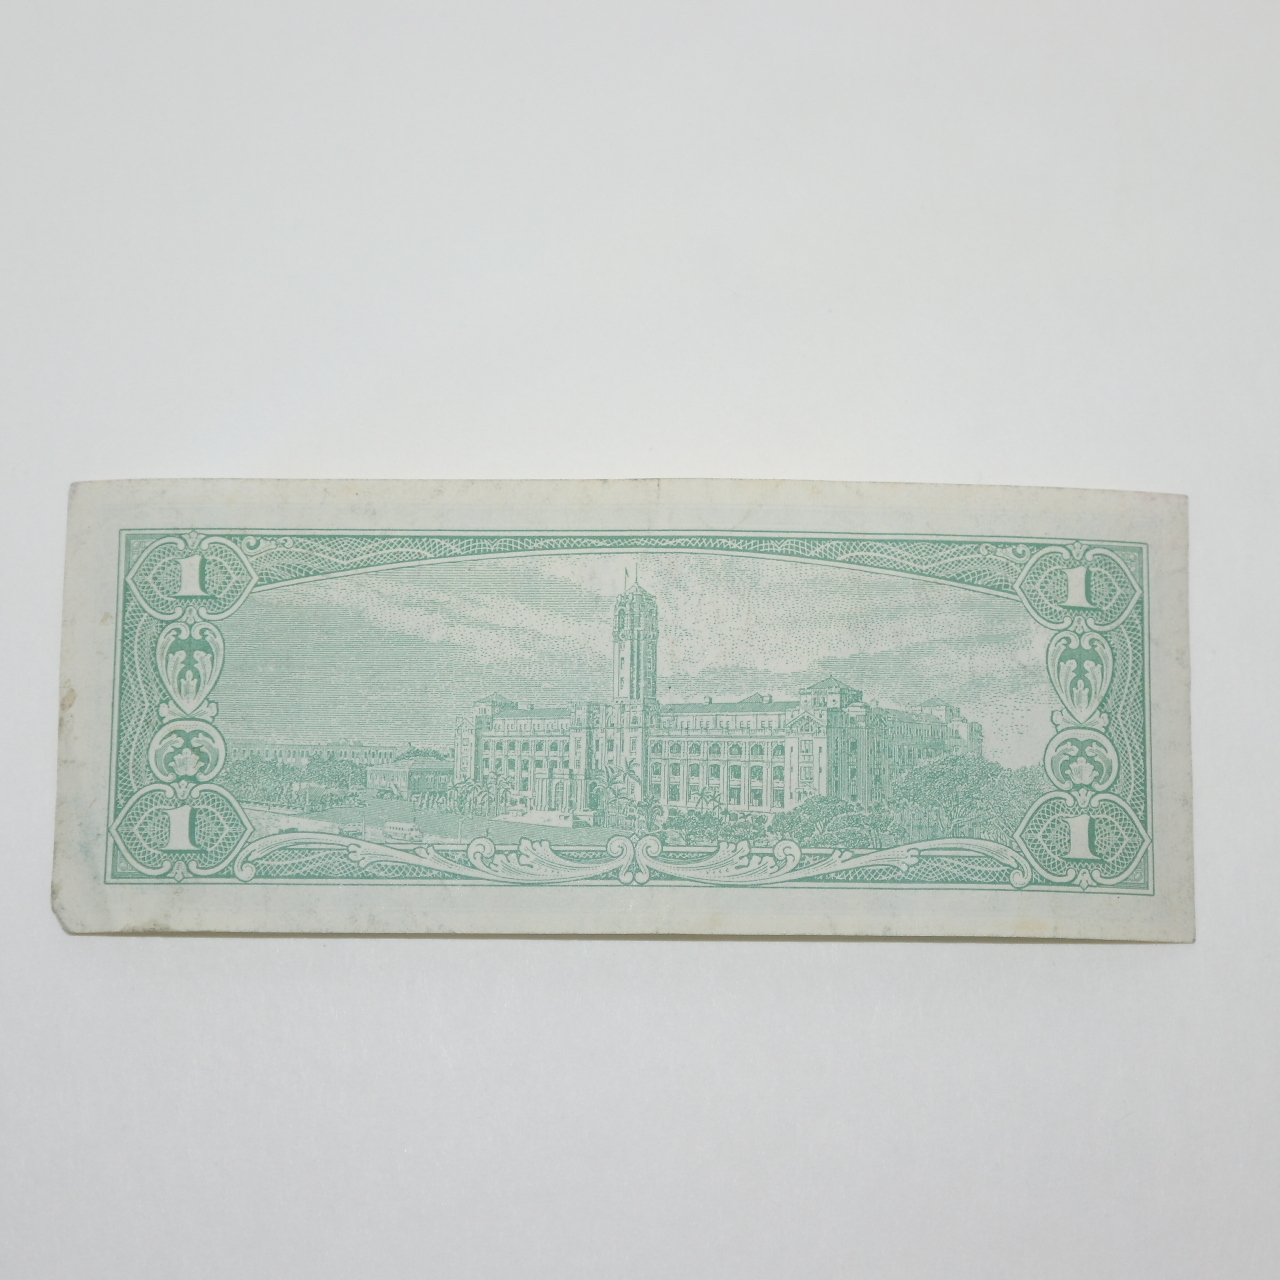 중화민국50년 일원 지폐